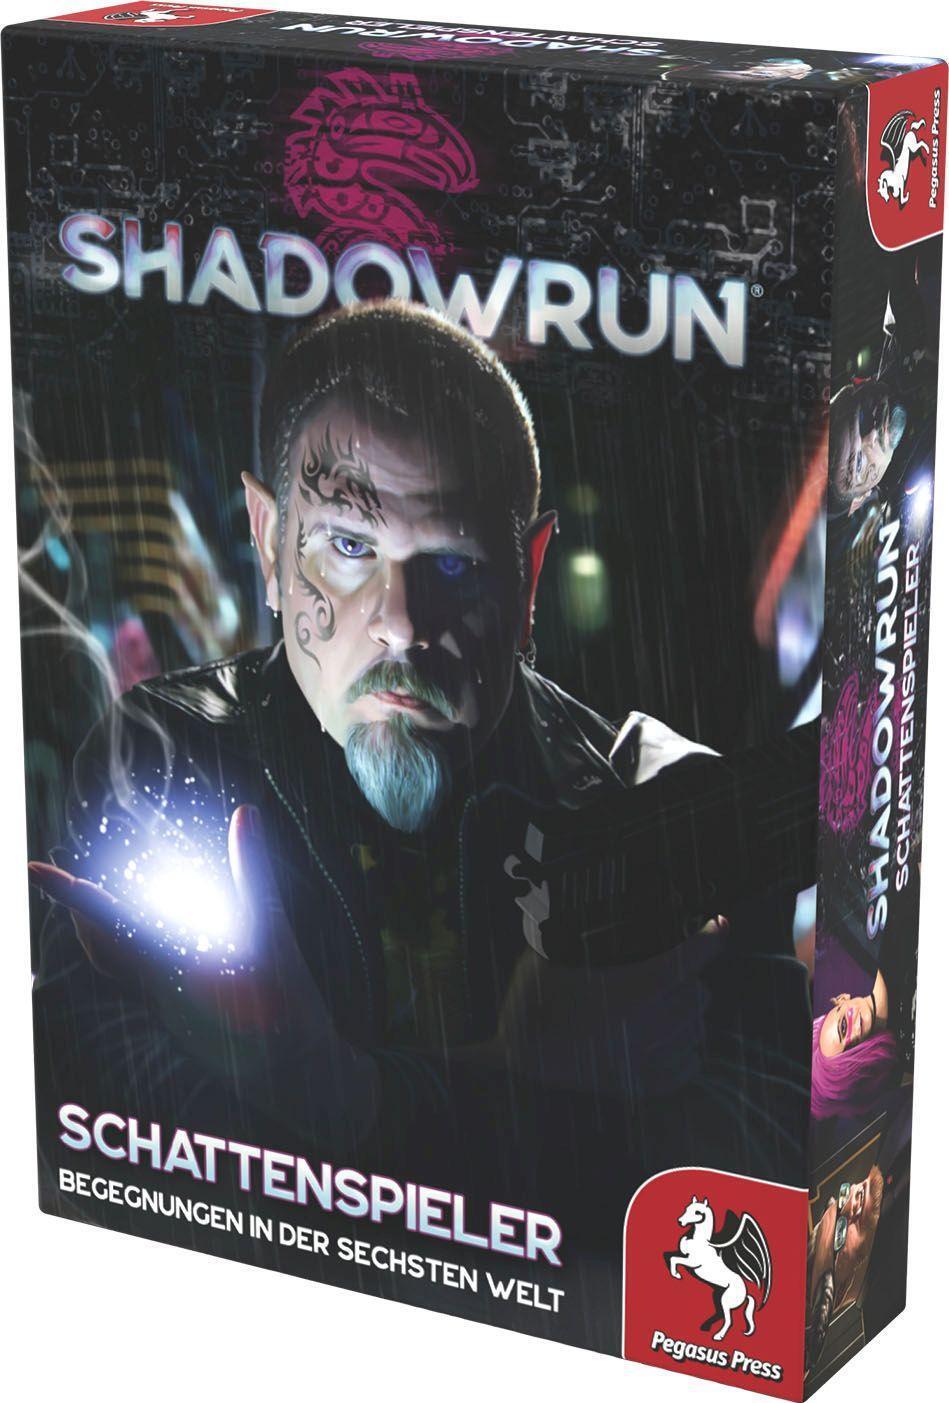 Bild: 4250231727931 | Shadowrun: Schattenspieler (Spielkarten-Set) | Spiel | Deutsch | 2021